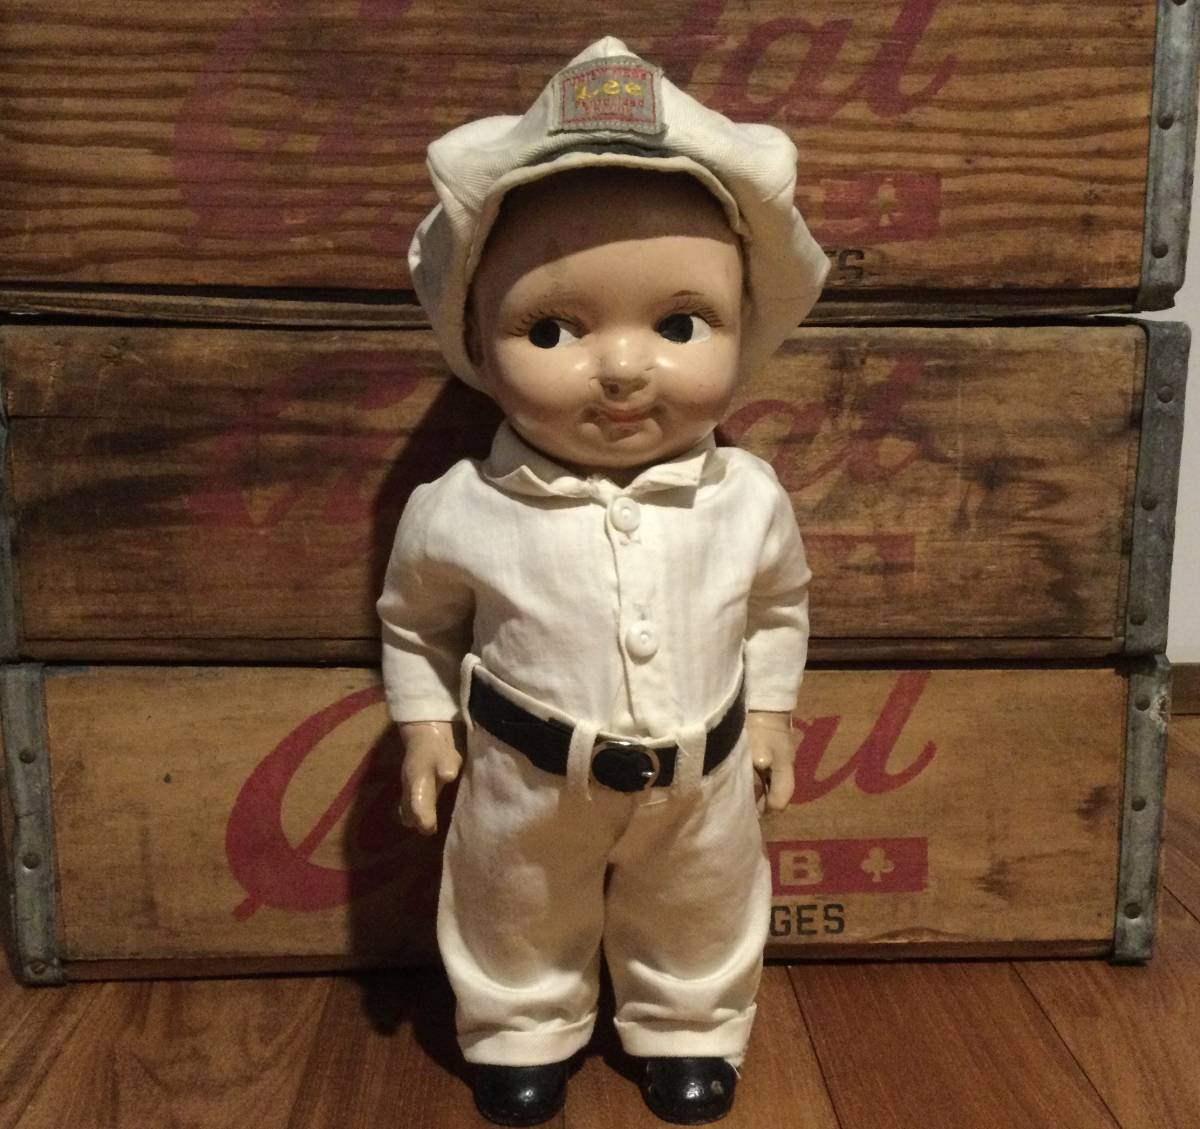 バディリー人形 vintage buddy lee doll メイルオーダー